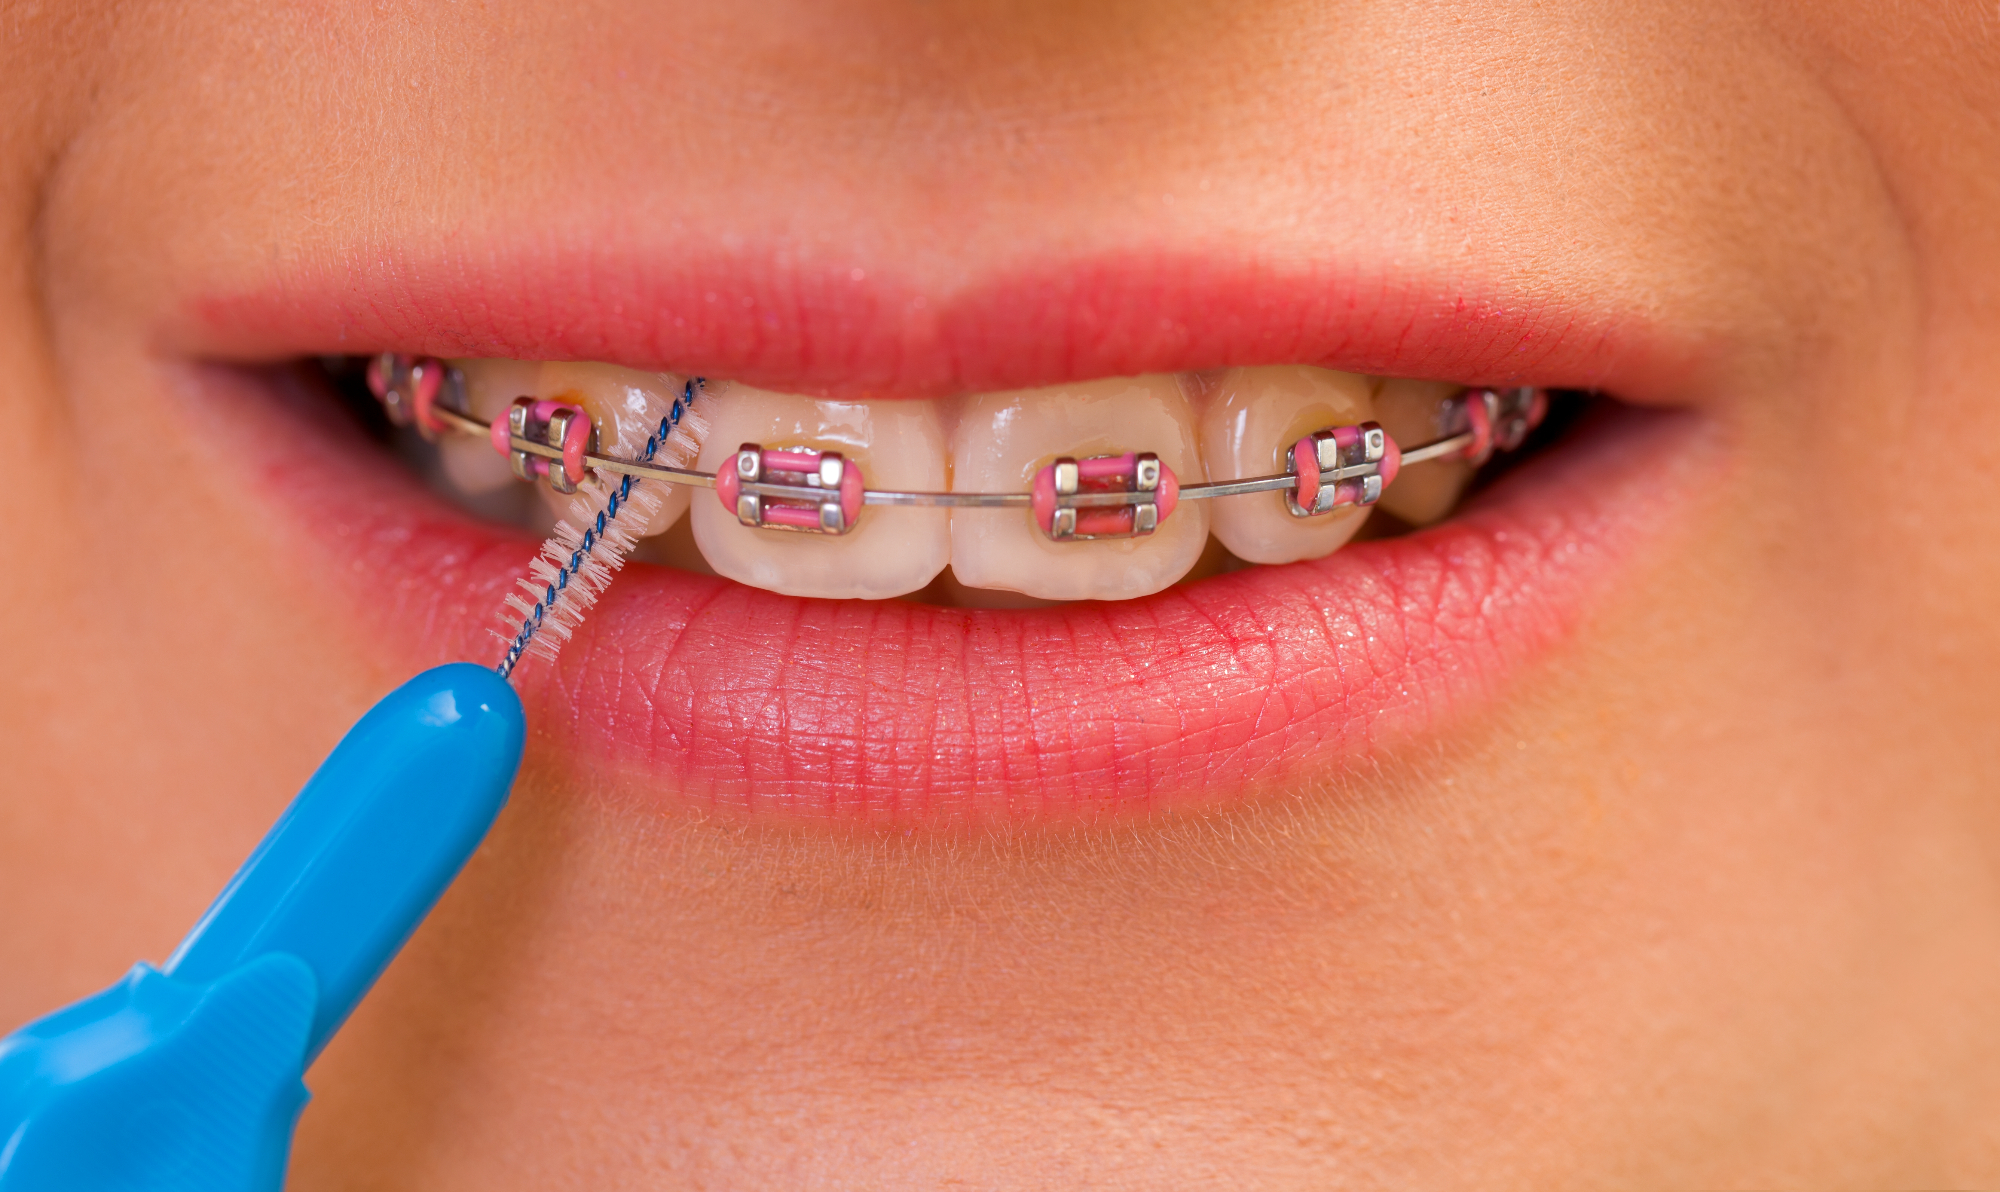 Ortodont Ljubljana vam pomaga tudi pri izbiri primernega aparata za zobe